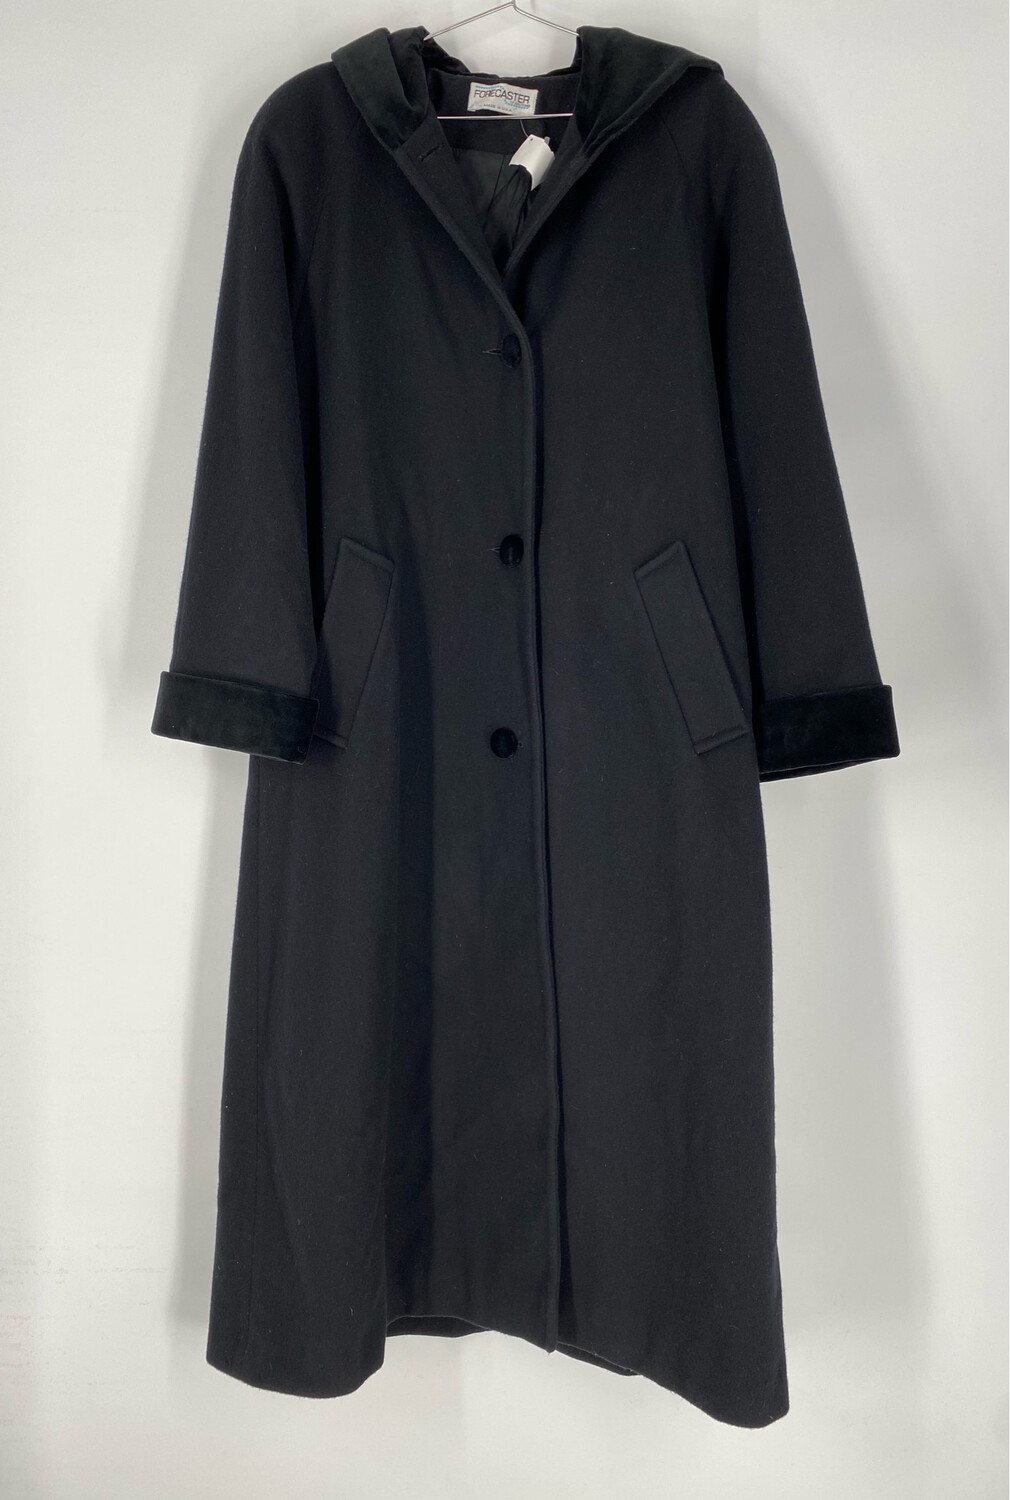 Forecaster Black Wool And Velvet Hooded Long Coat Size M